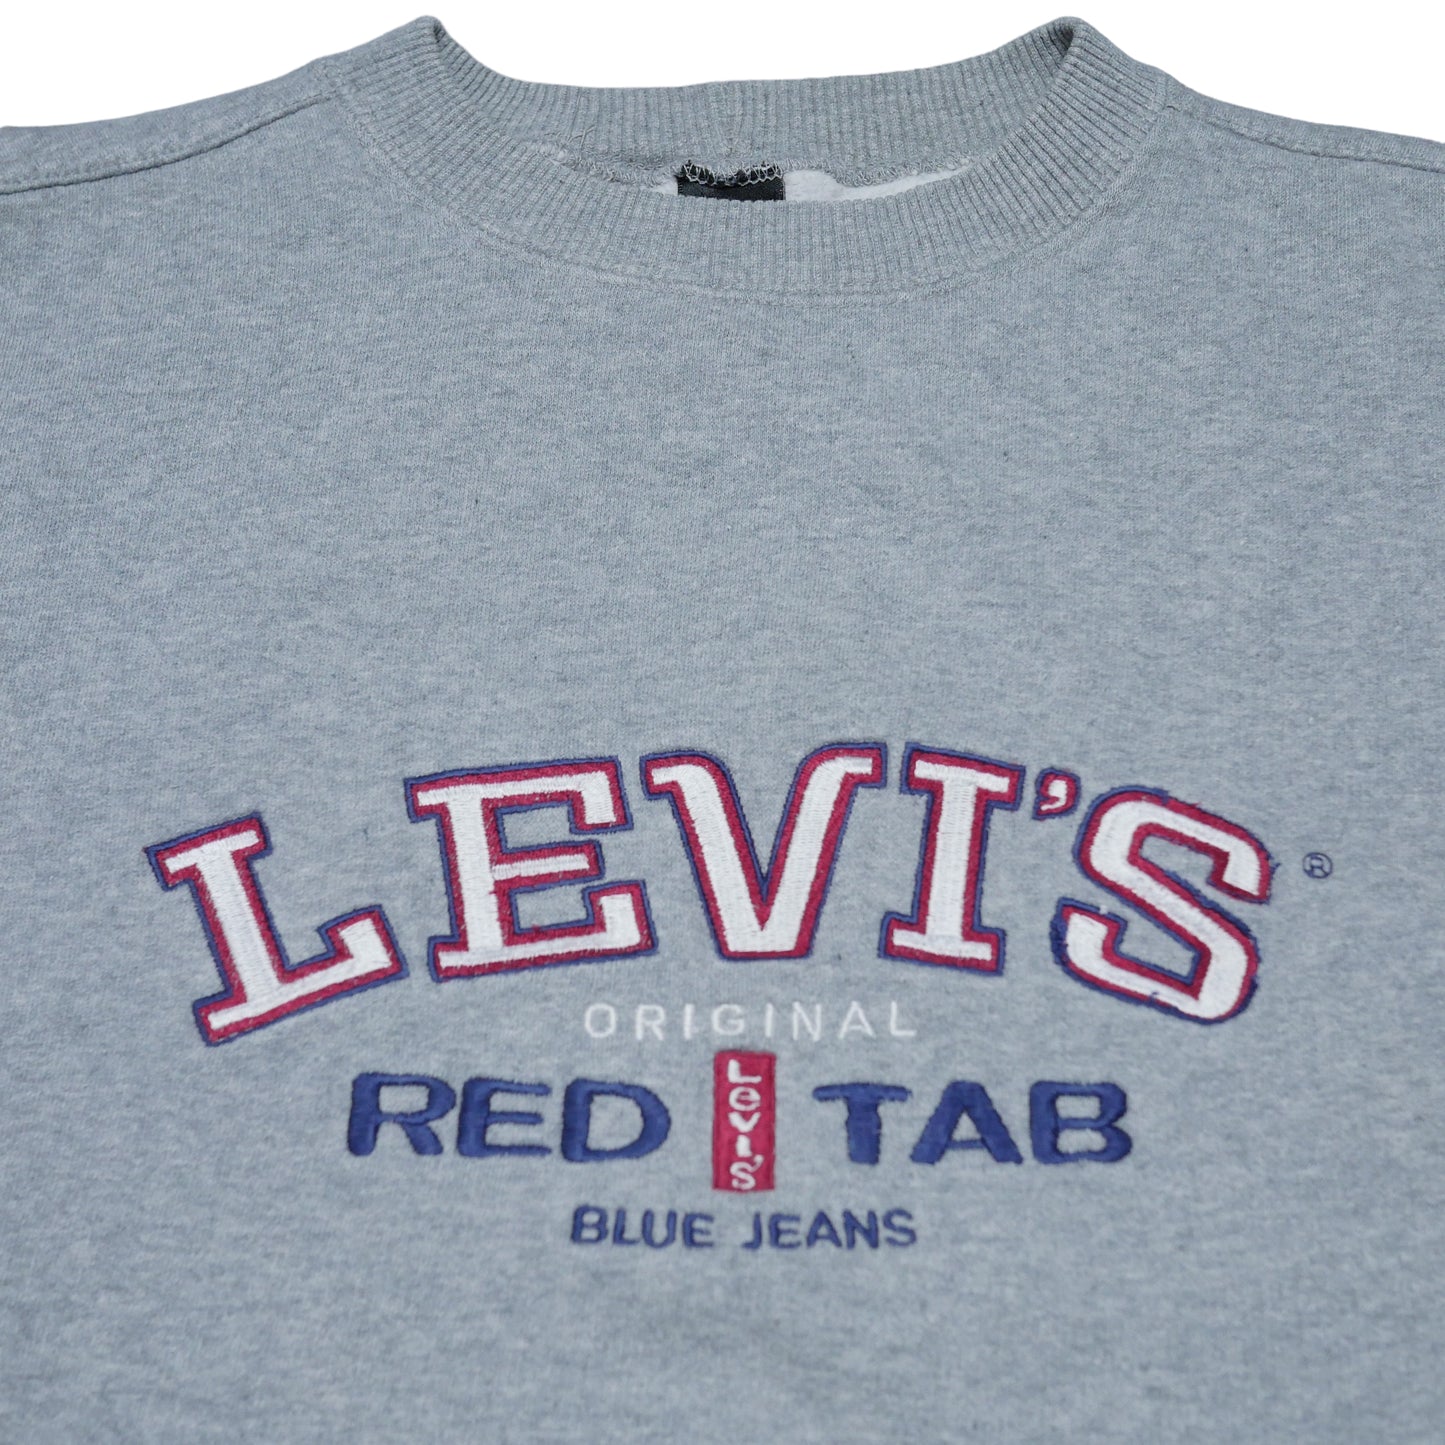 Levi’s Red Tab Crewneck Sweatshirt - Medium